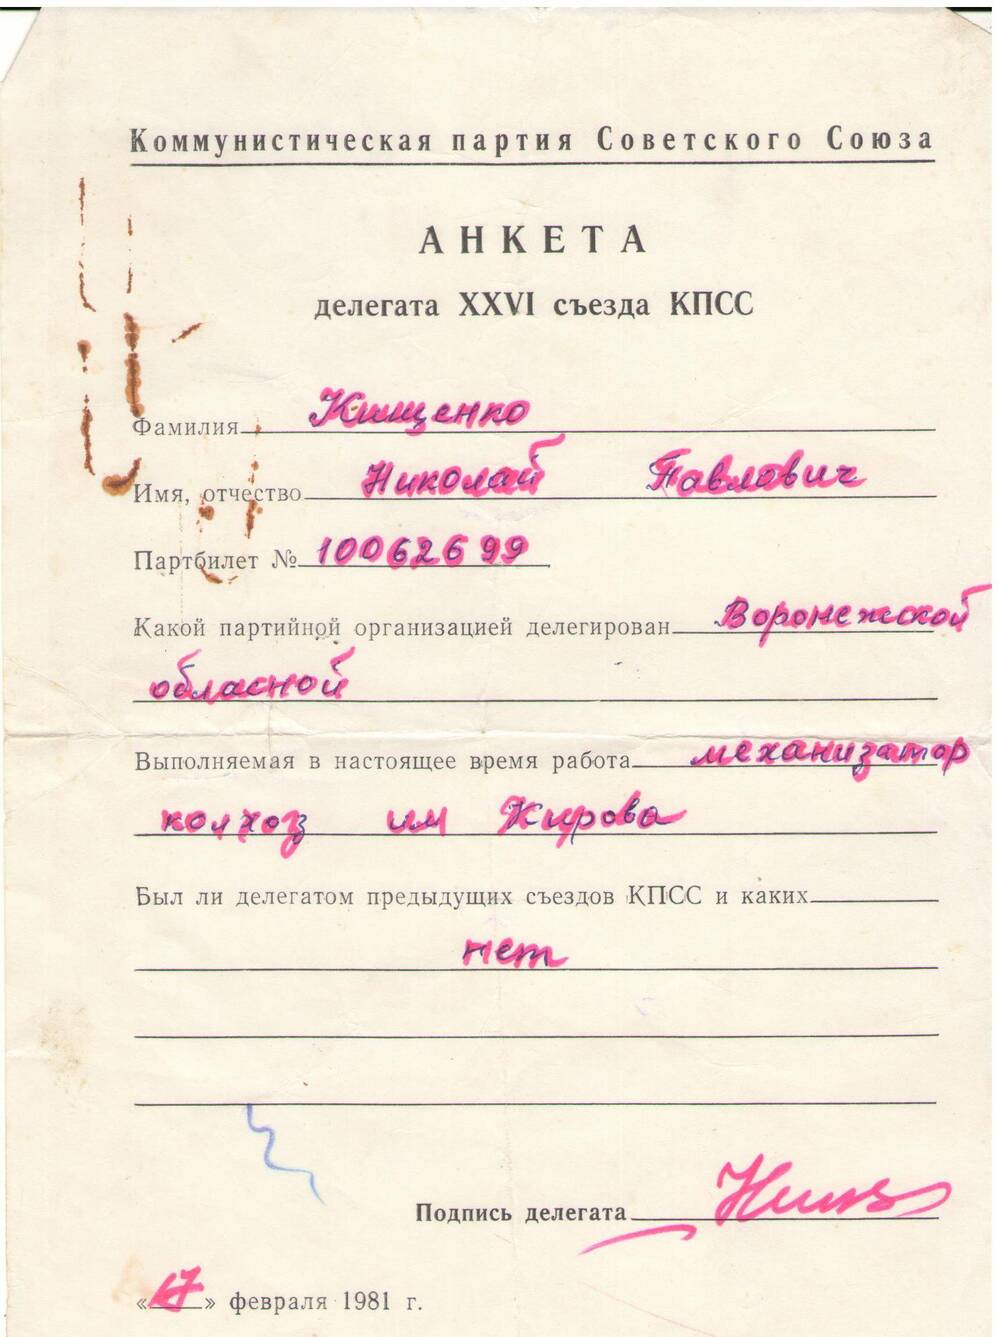 Анкета делегата 26 съезда КПСС Кищенко Н.П. от 17 февраля 1981 г.